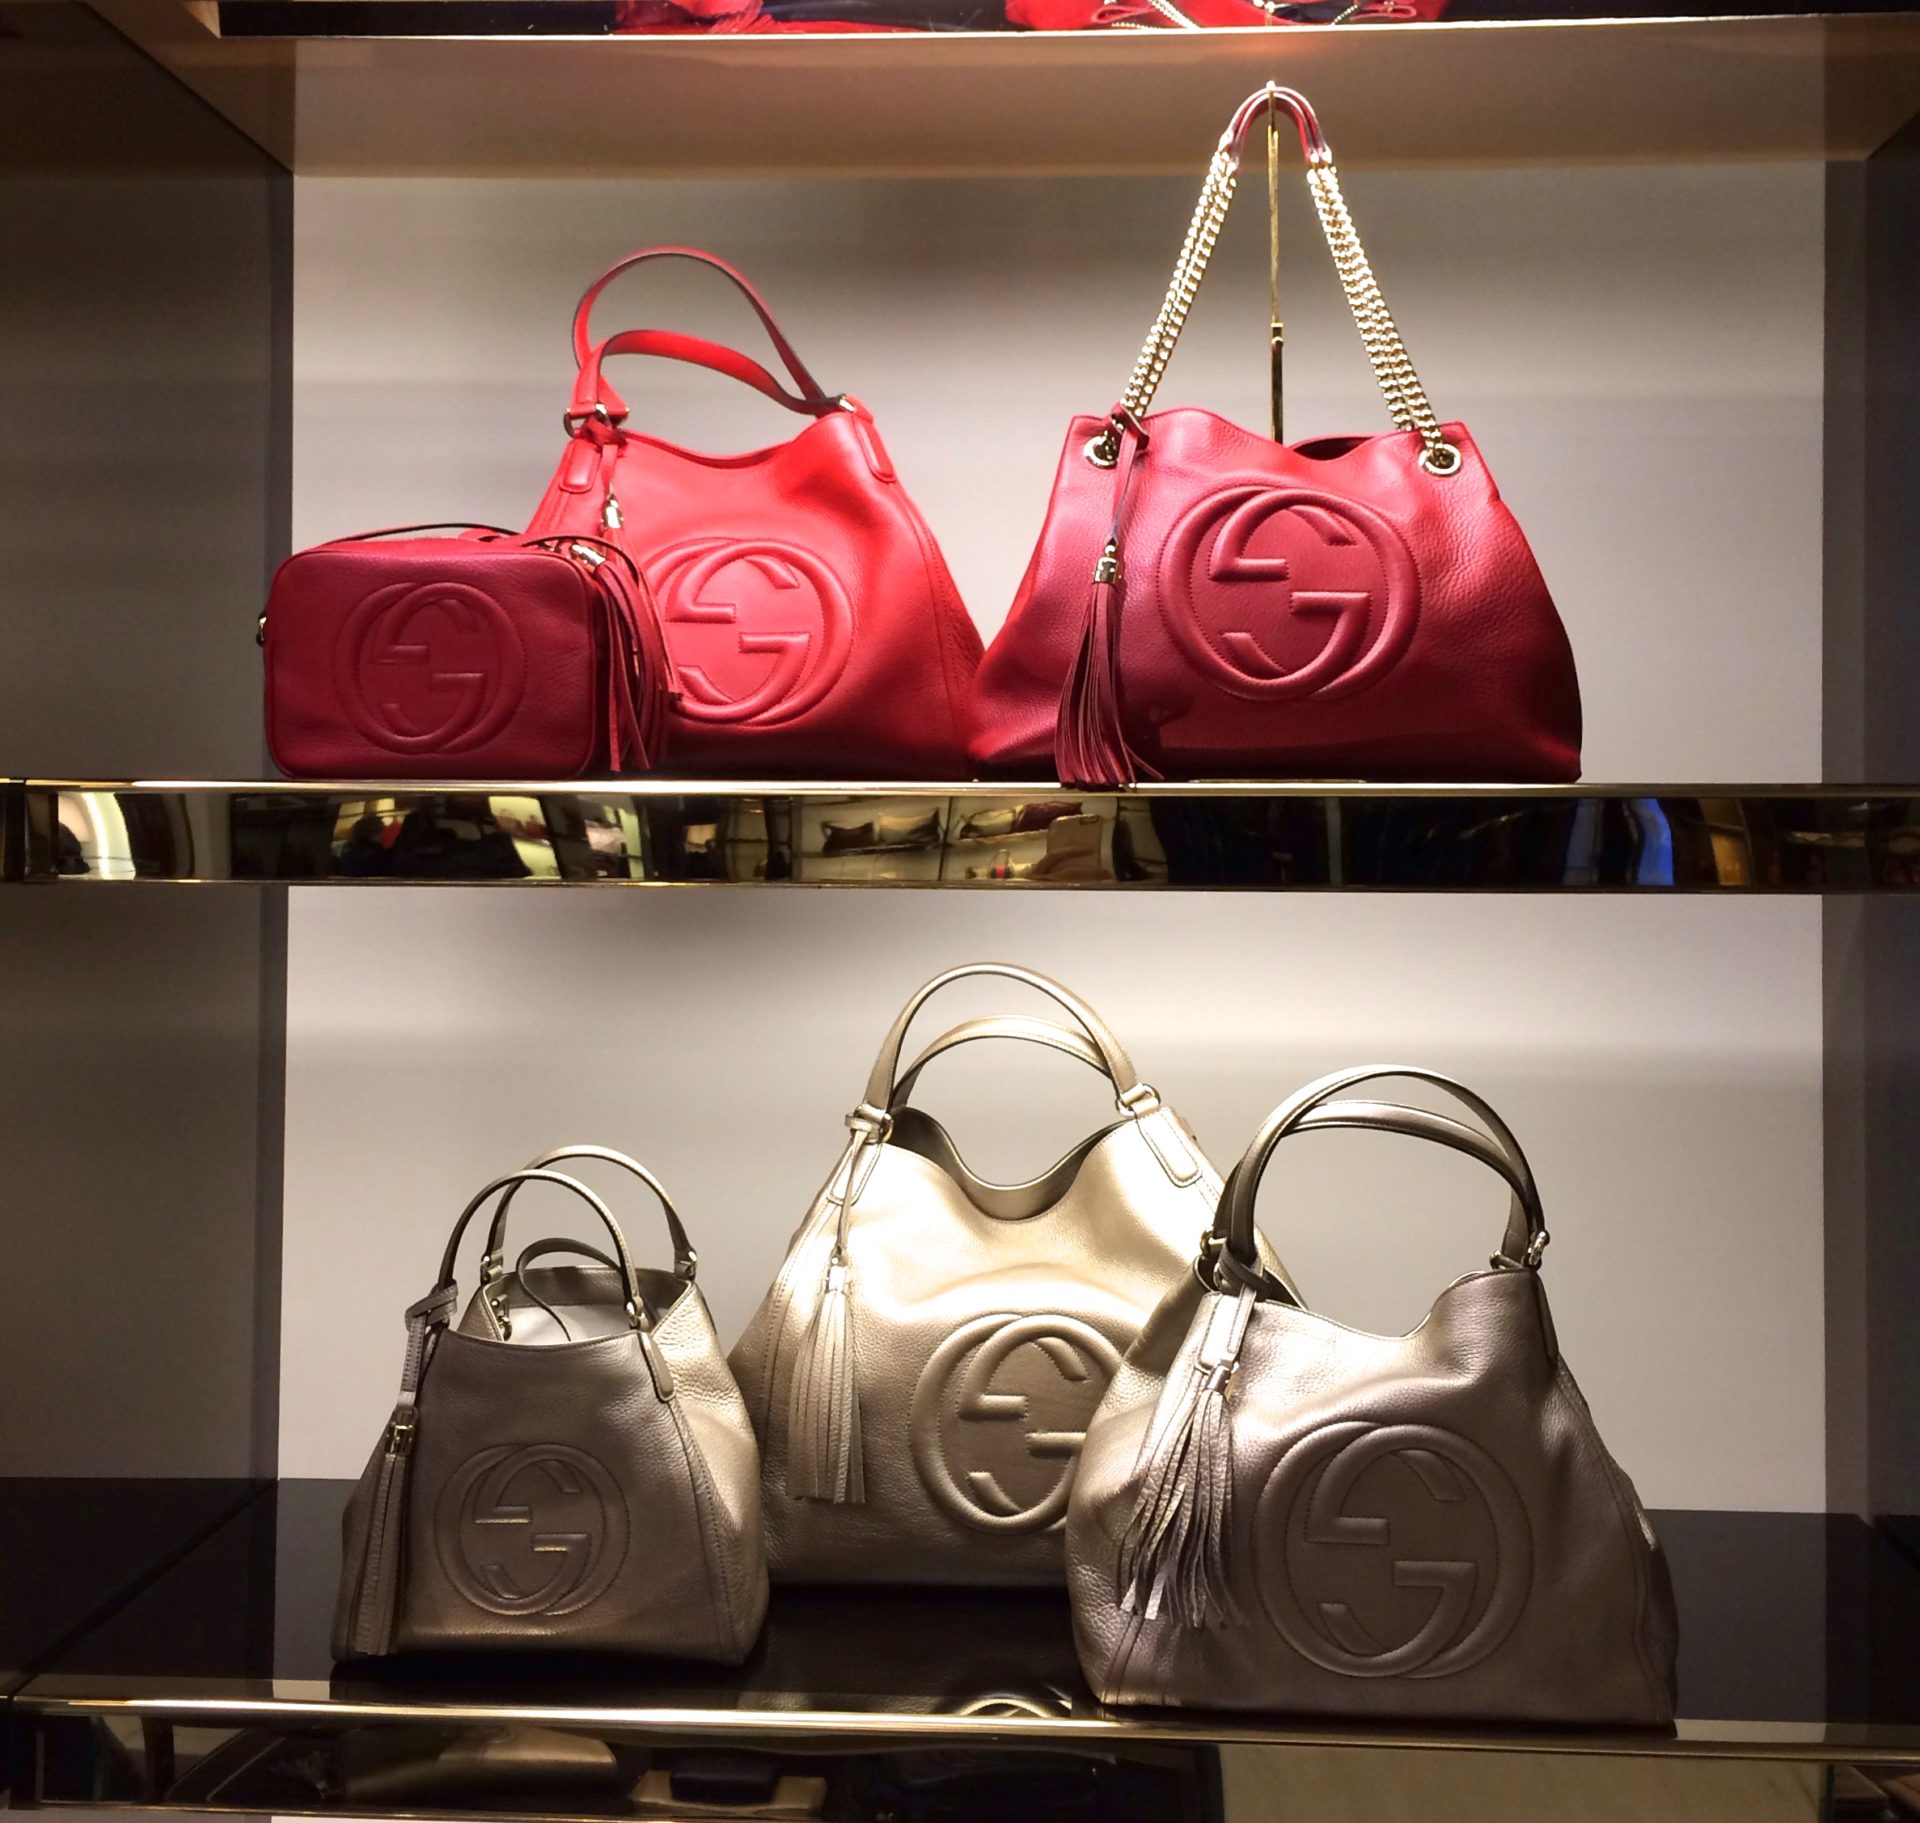 Bolsas Louis Vuitton: Veja 10 modelos usadas com cara de nova